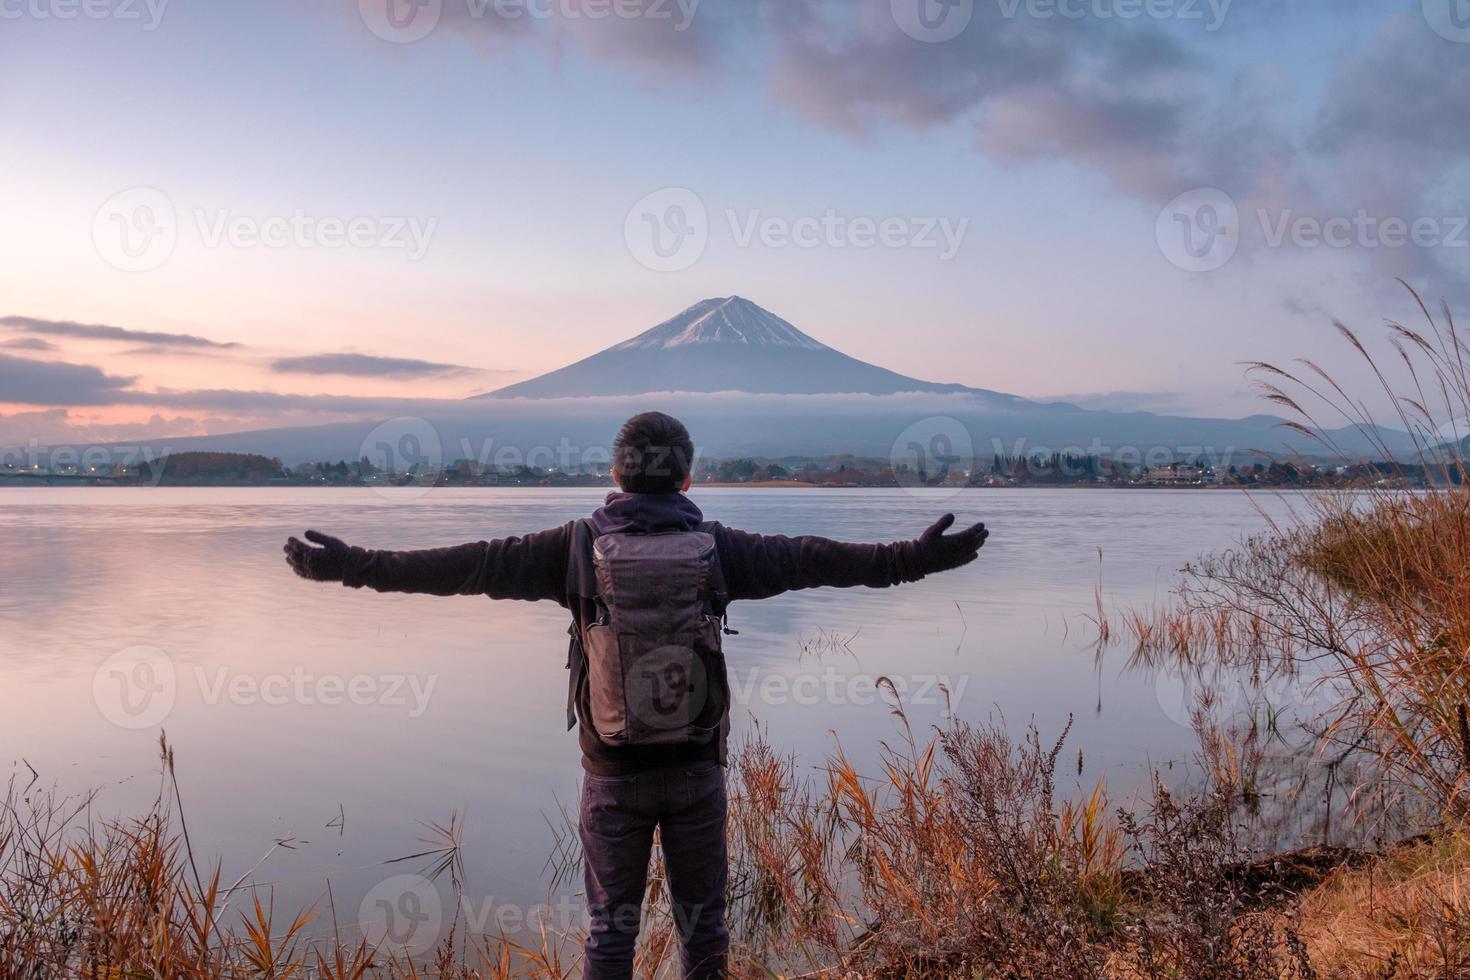 jovem asiático fica olhando o monte fuji no lago kawaguchiko ao amanhecer foto